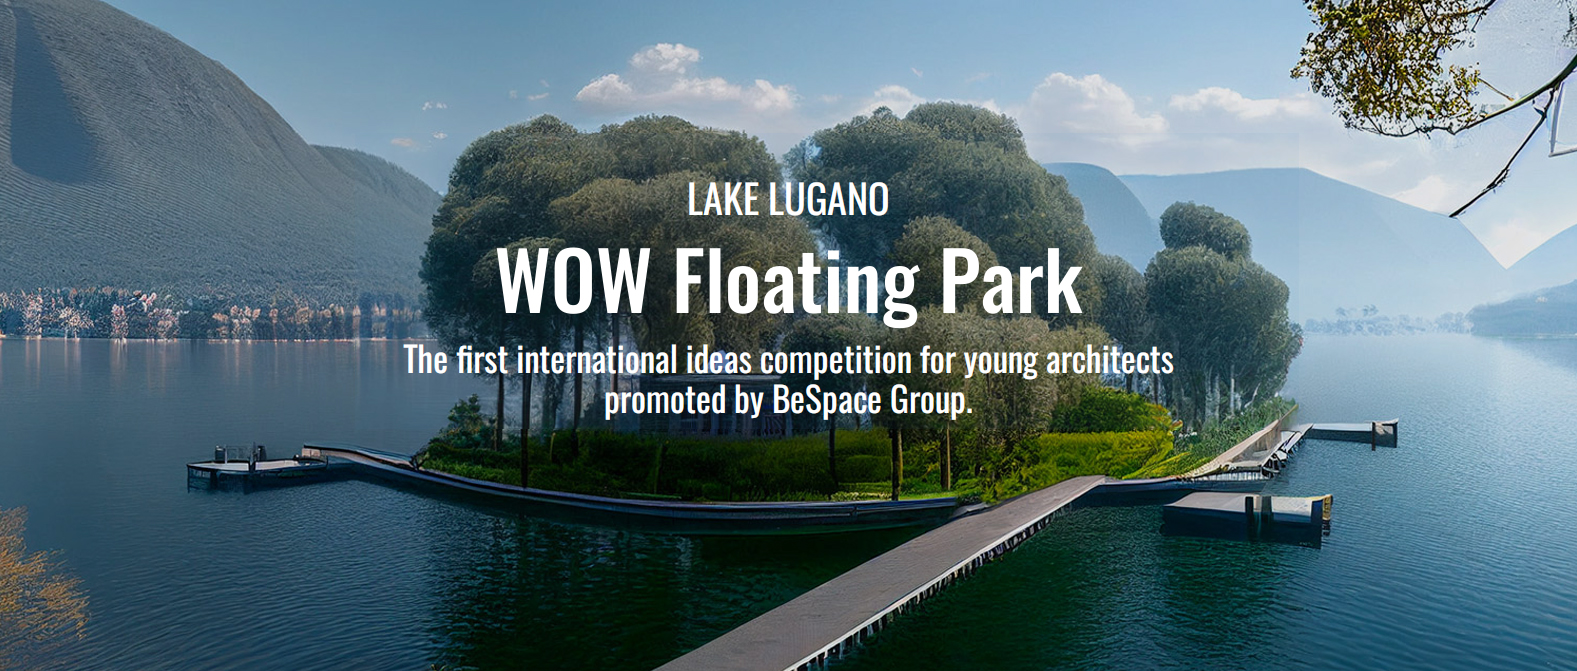 WOW 水上公园——首届国际青年建筑师创意大赛